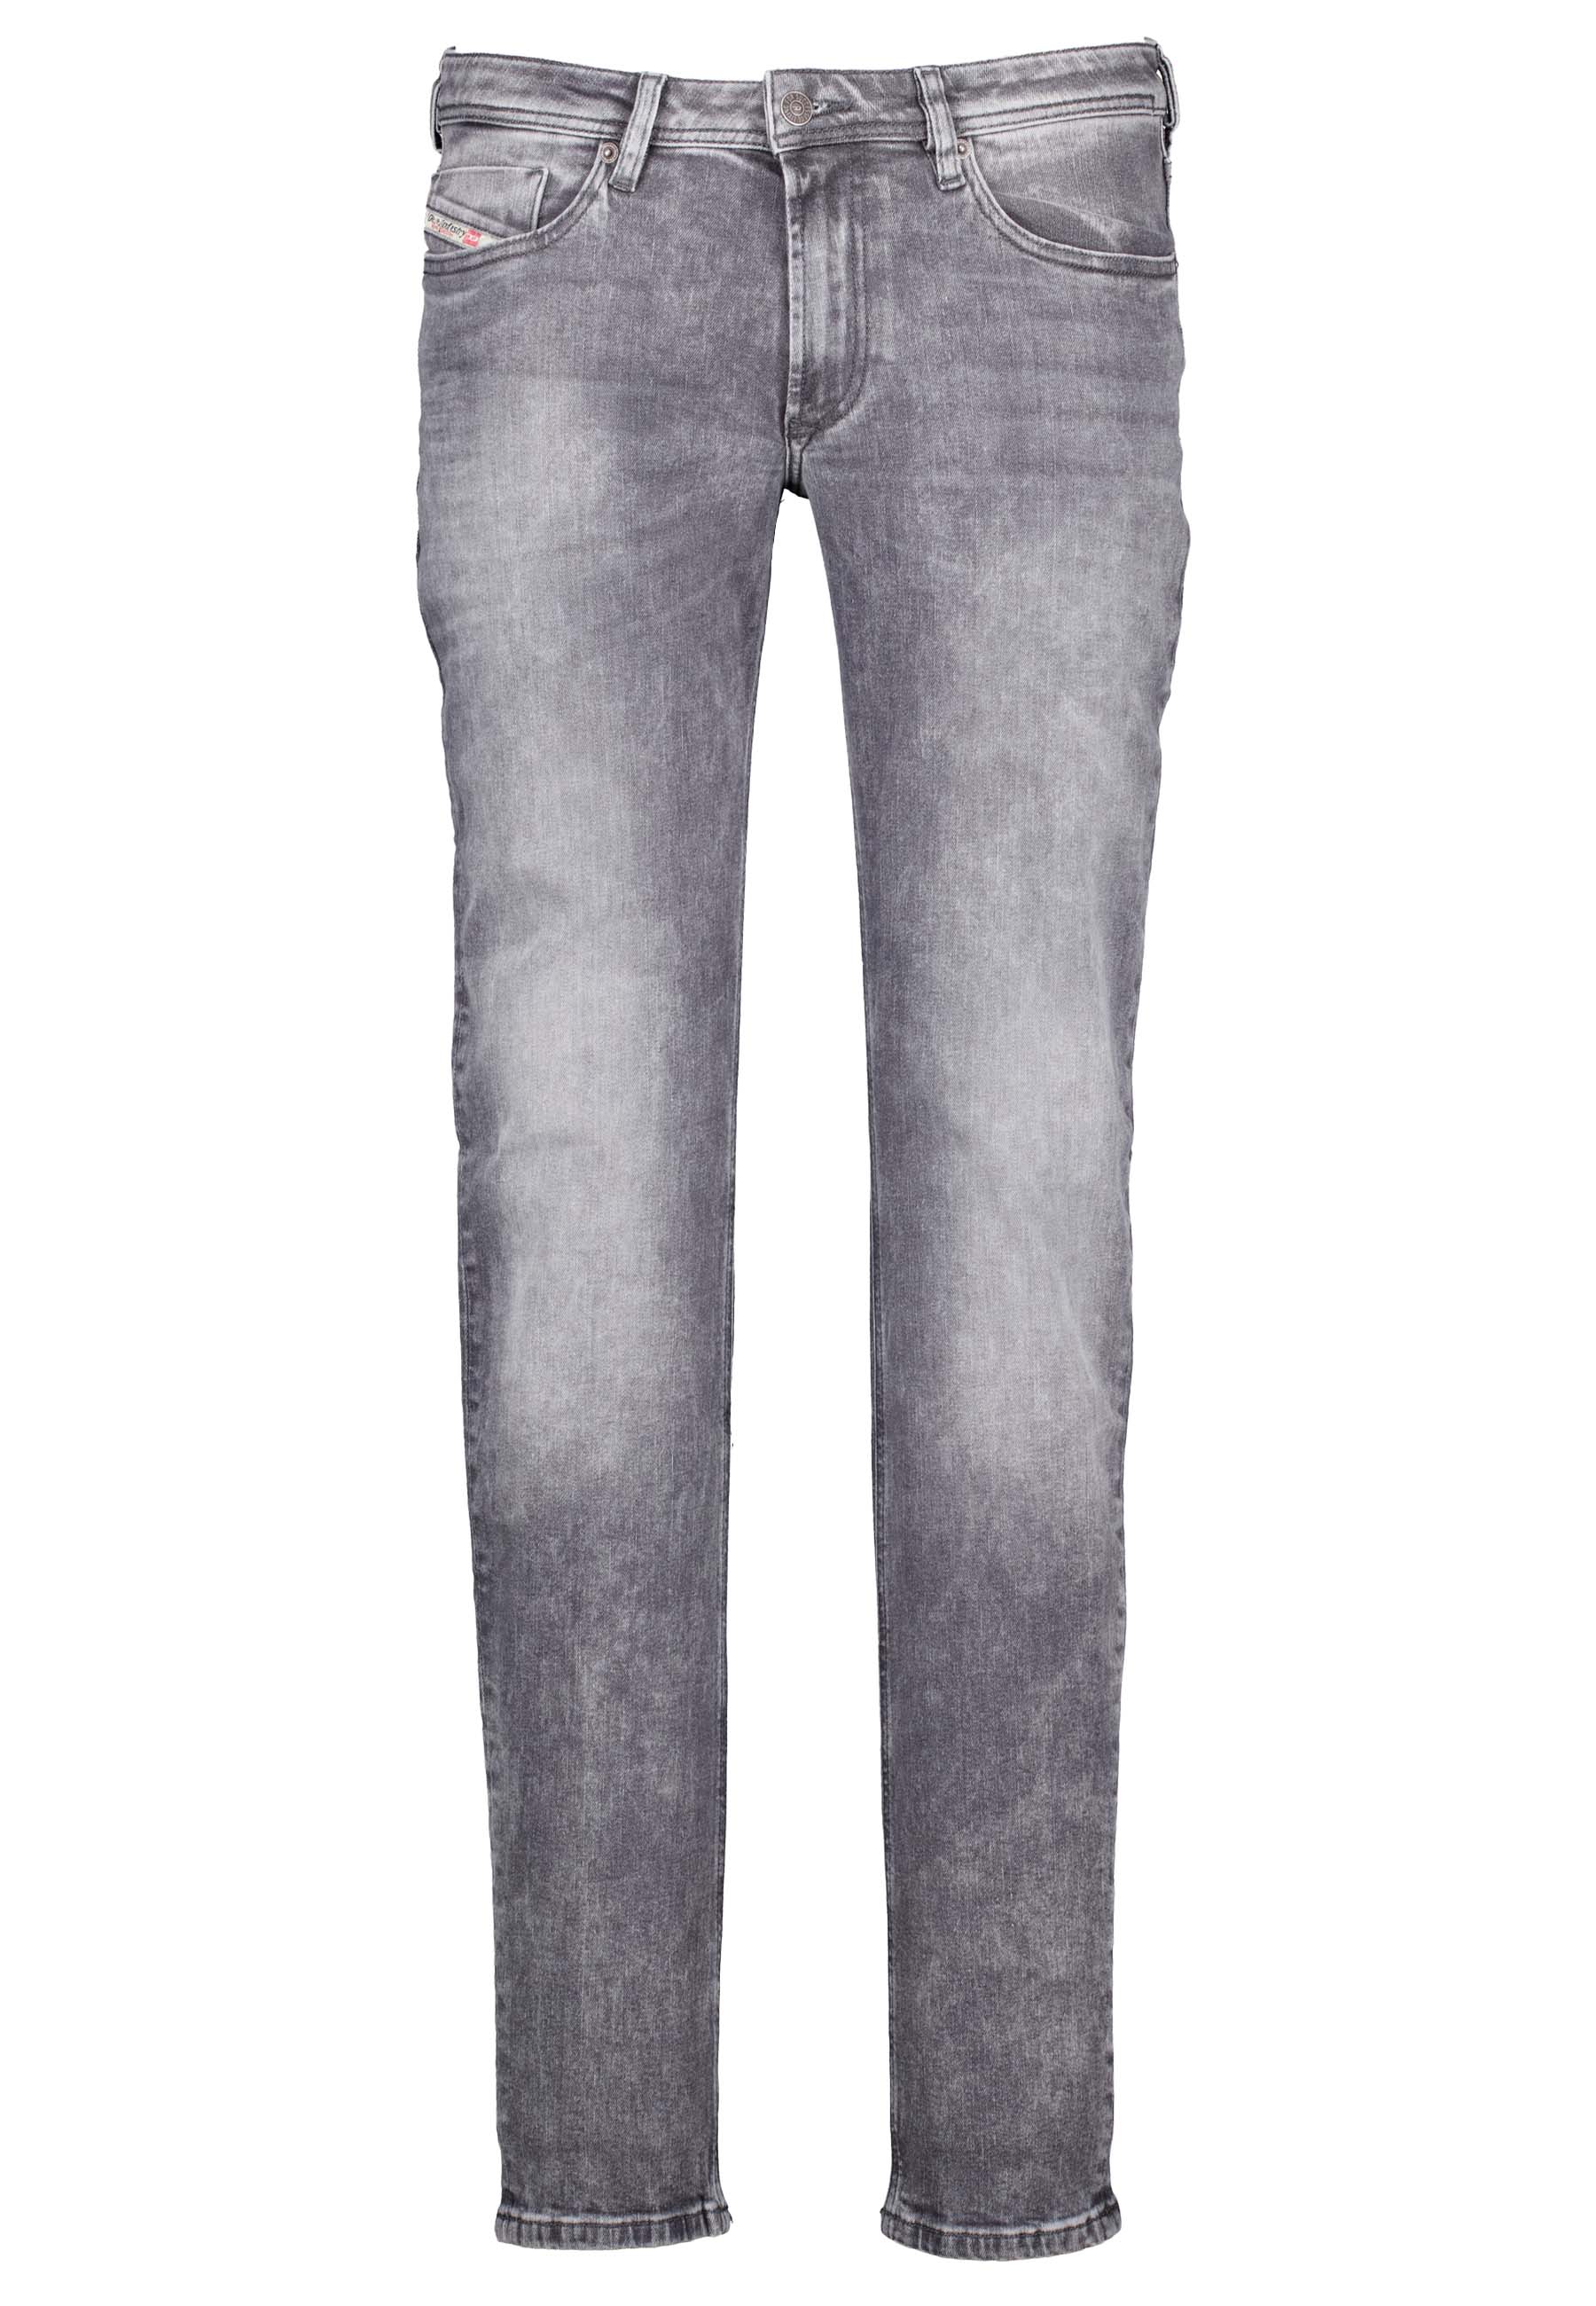 Diesel jeans grijs Heren maat 34/34